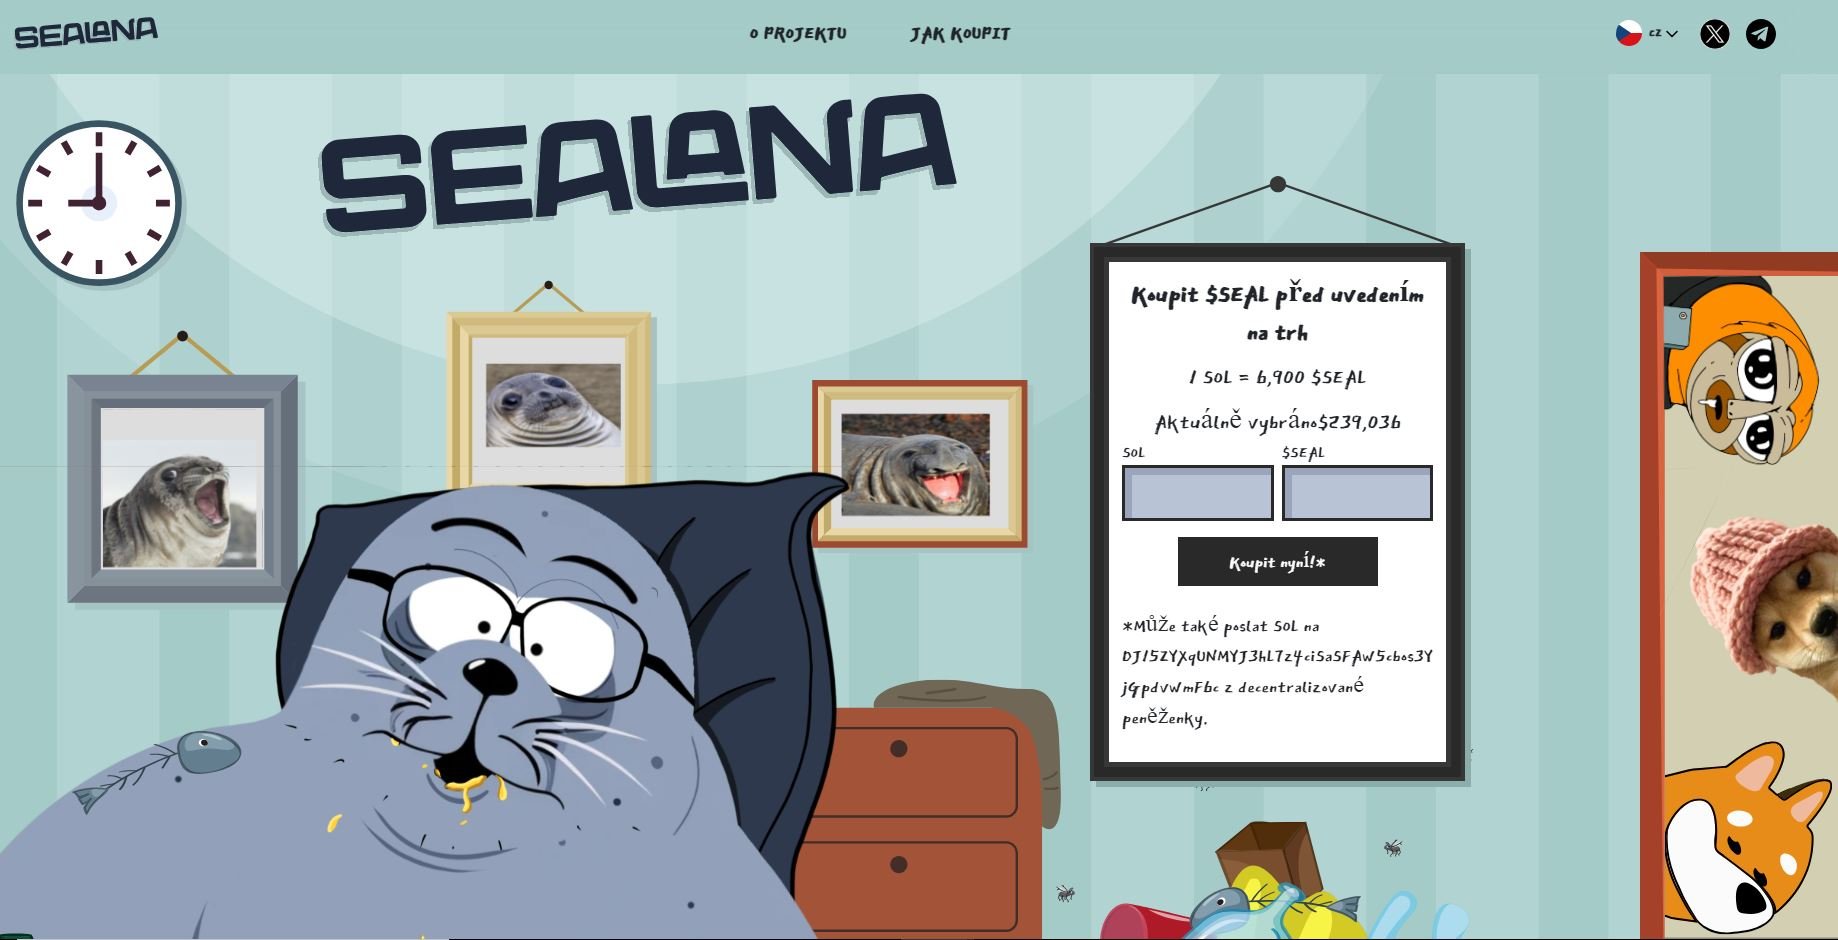 Sealana je nový meme coin založený na skutečném americkém tuleni a patří mezi nové kryptoměny s potenciálem